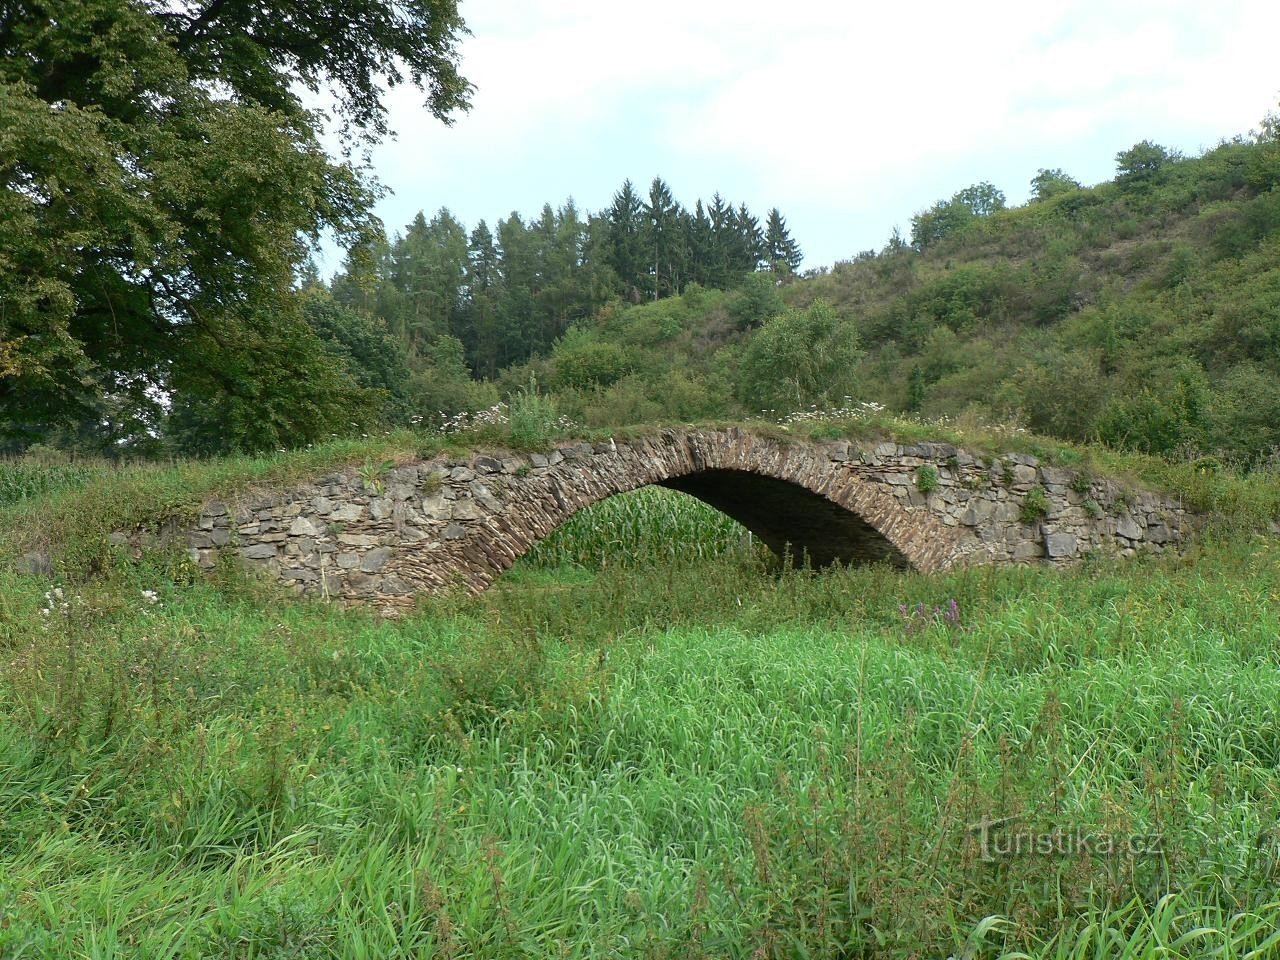 Žižk's Bridge under Katovicka Hora